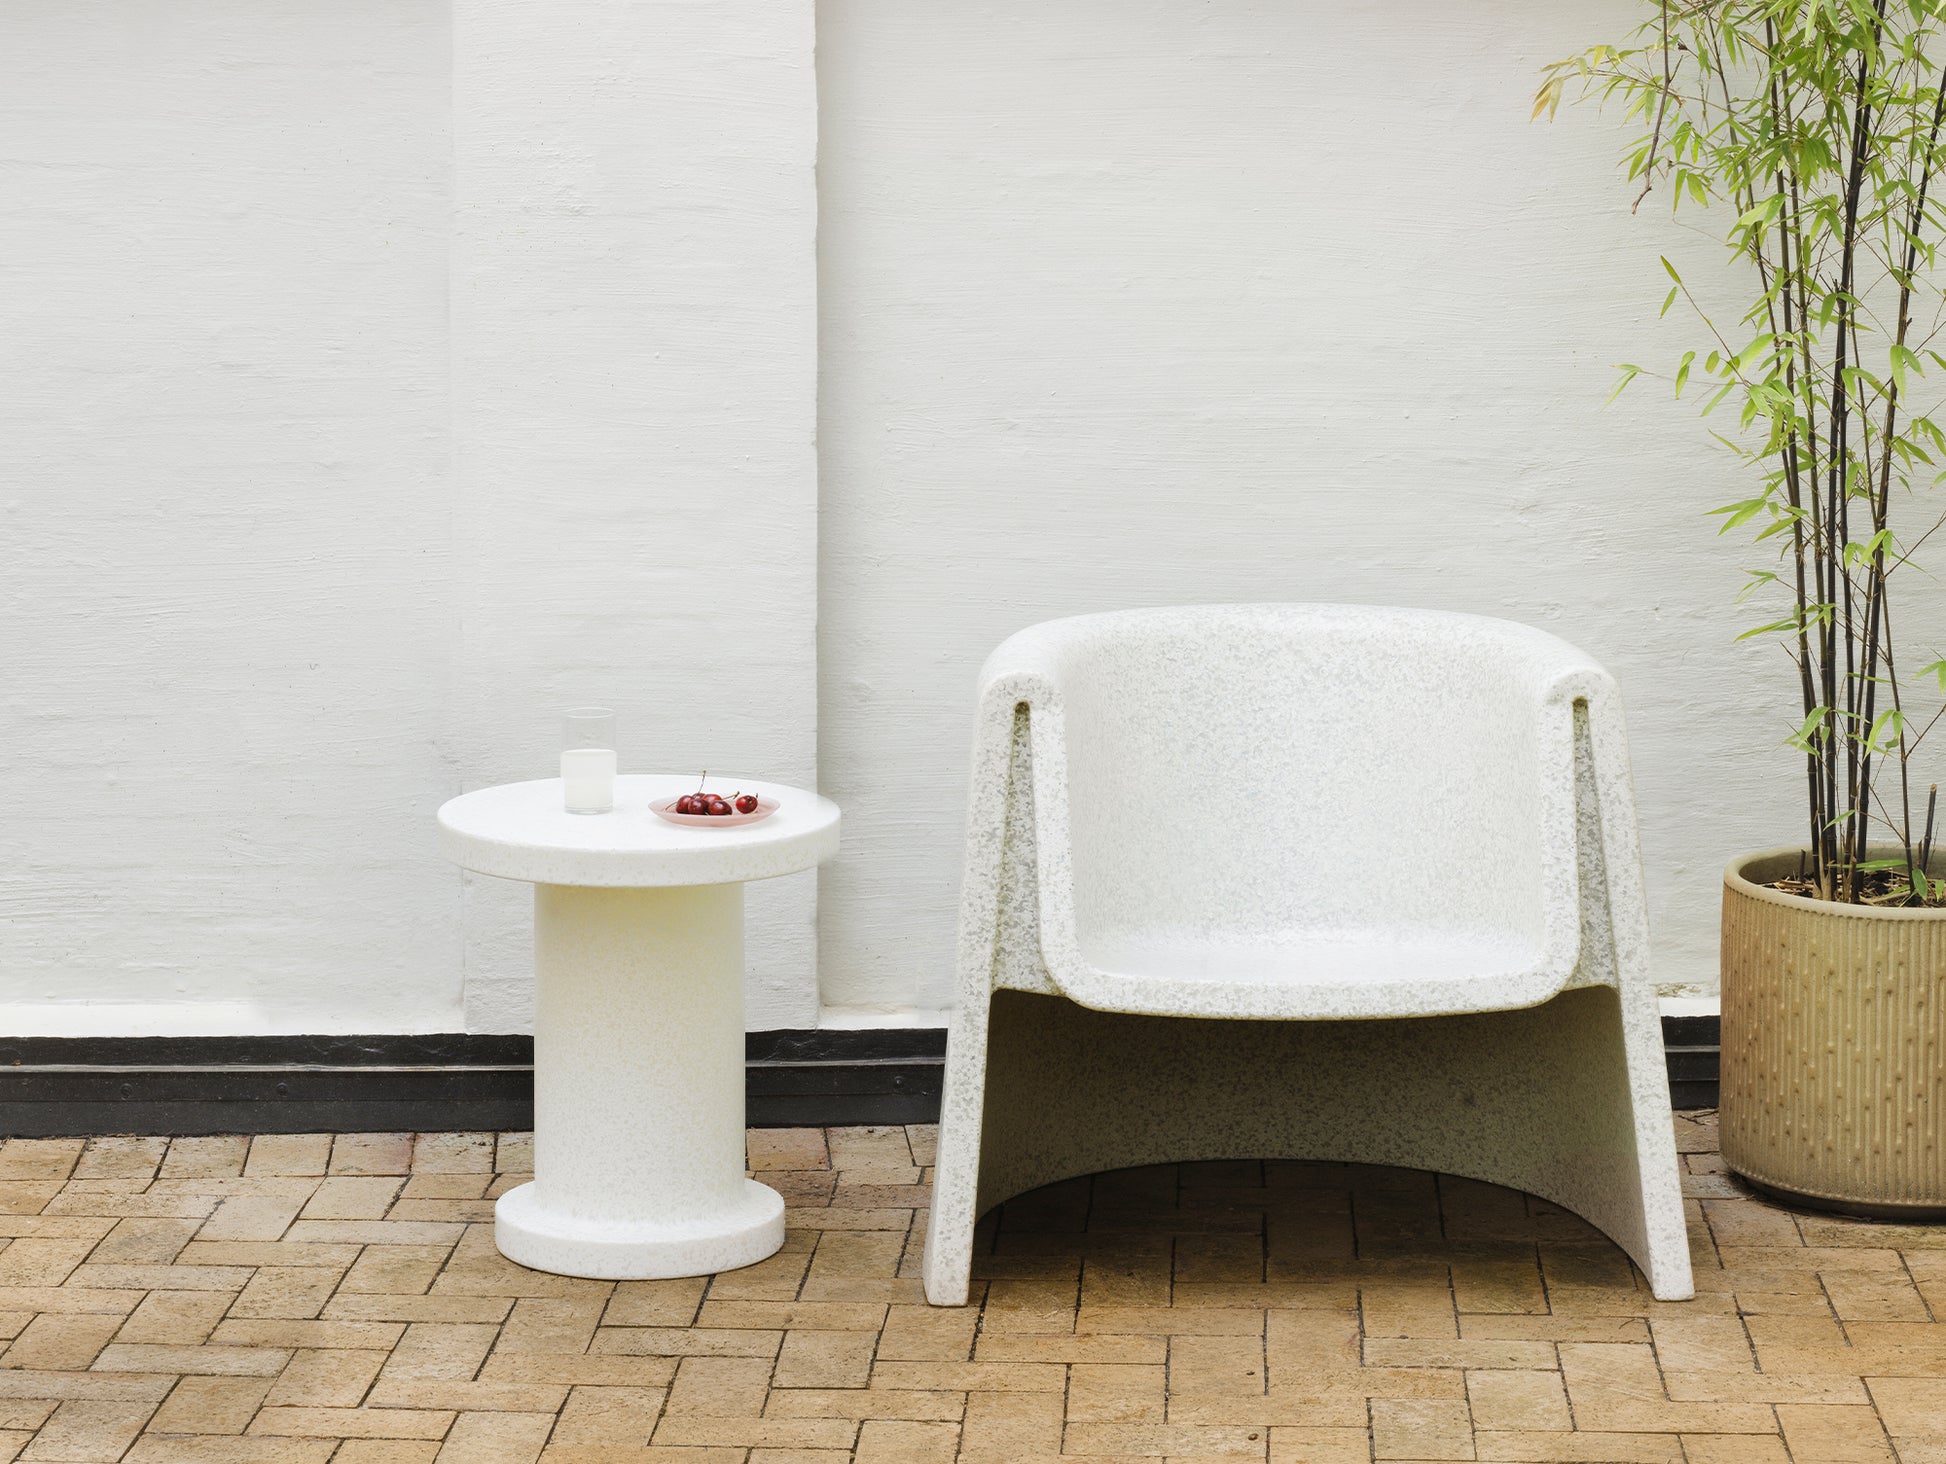 Bit Side Table by Normann Copenhagen - White